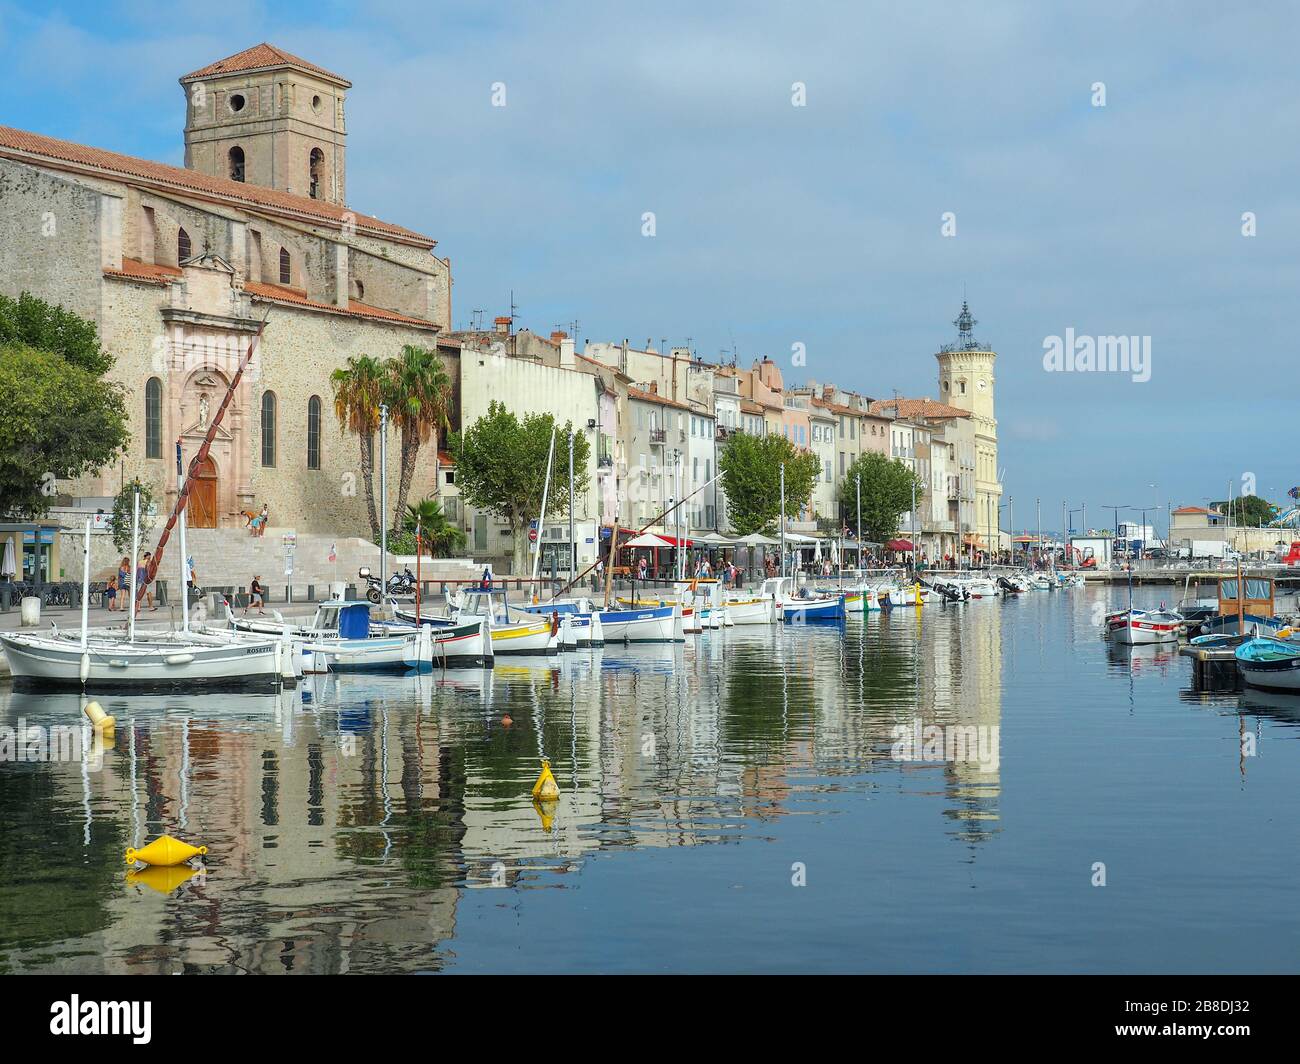 Vieux Port aka alten Hafen in einer mediterranen Stadt La Ciotat in Südfrankreich mit vielen angedockten kleinen Booten und der Hauptkirche der Stadt Stockfoto